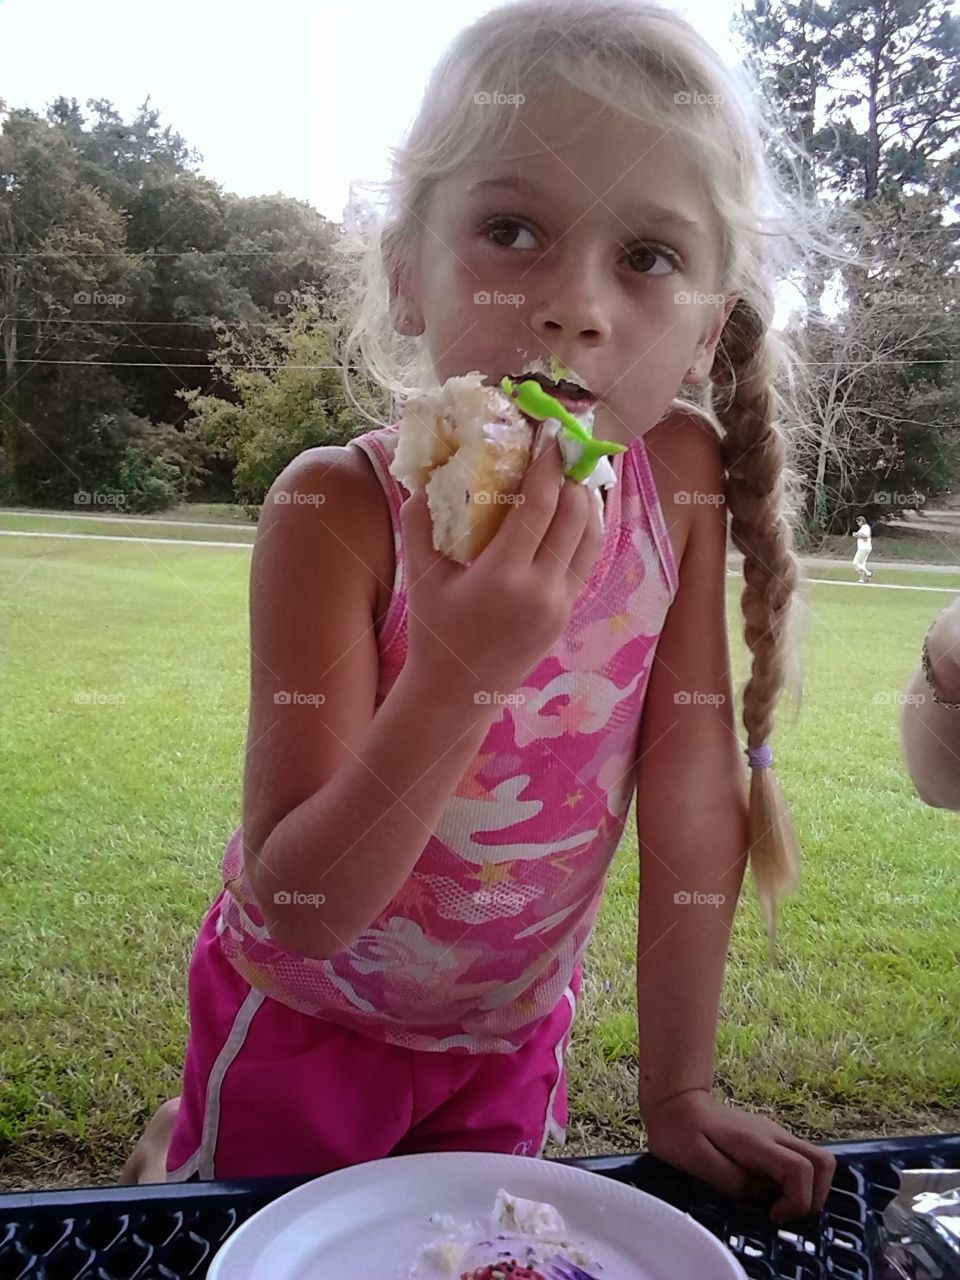 Eating her cupcake